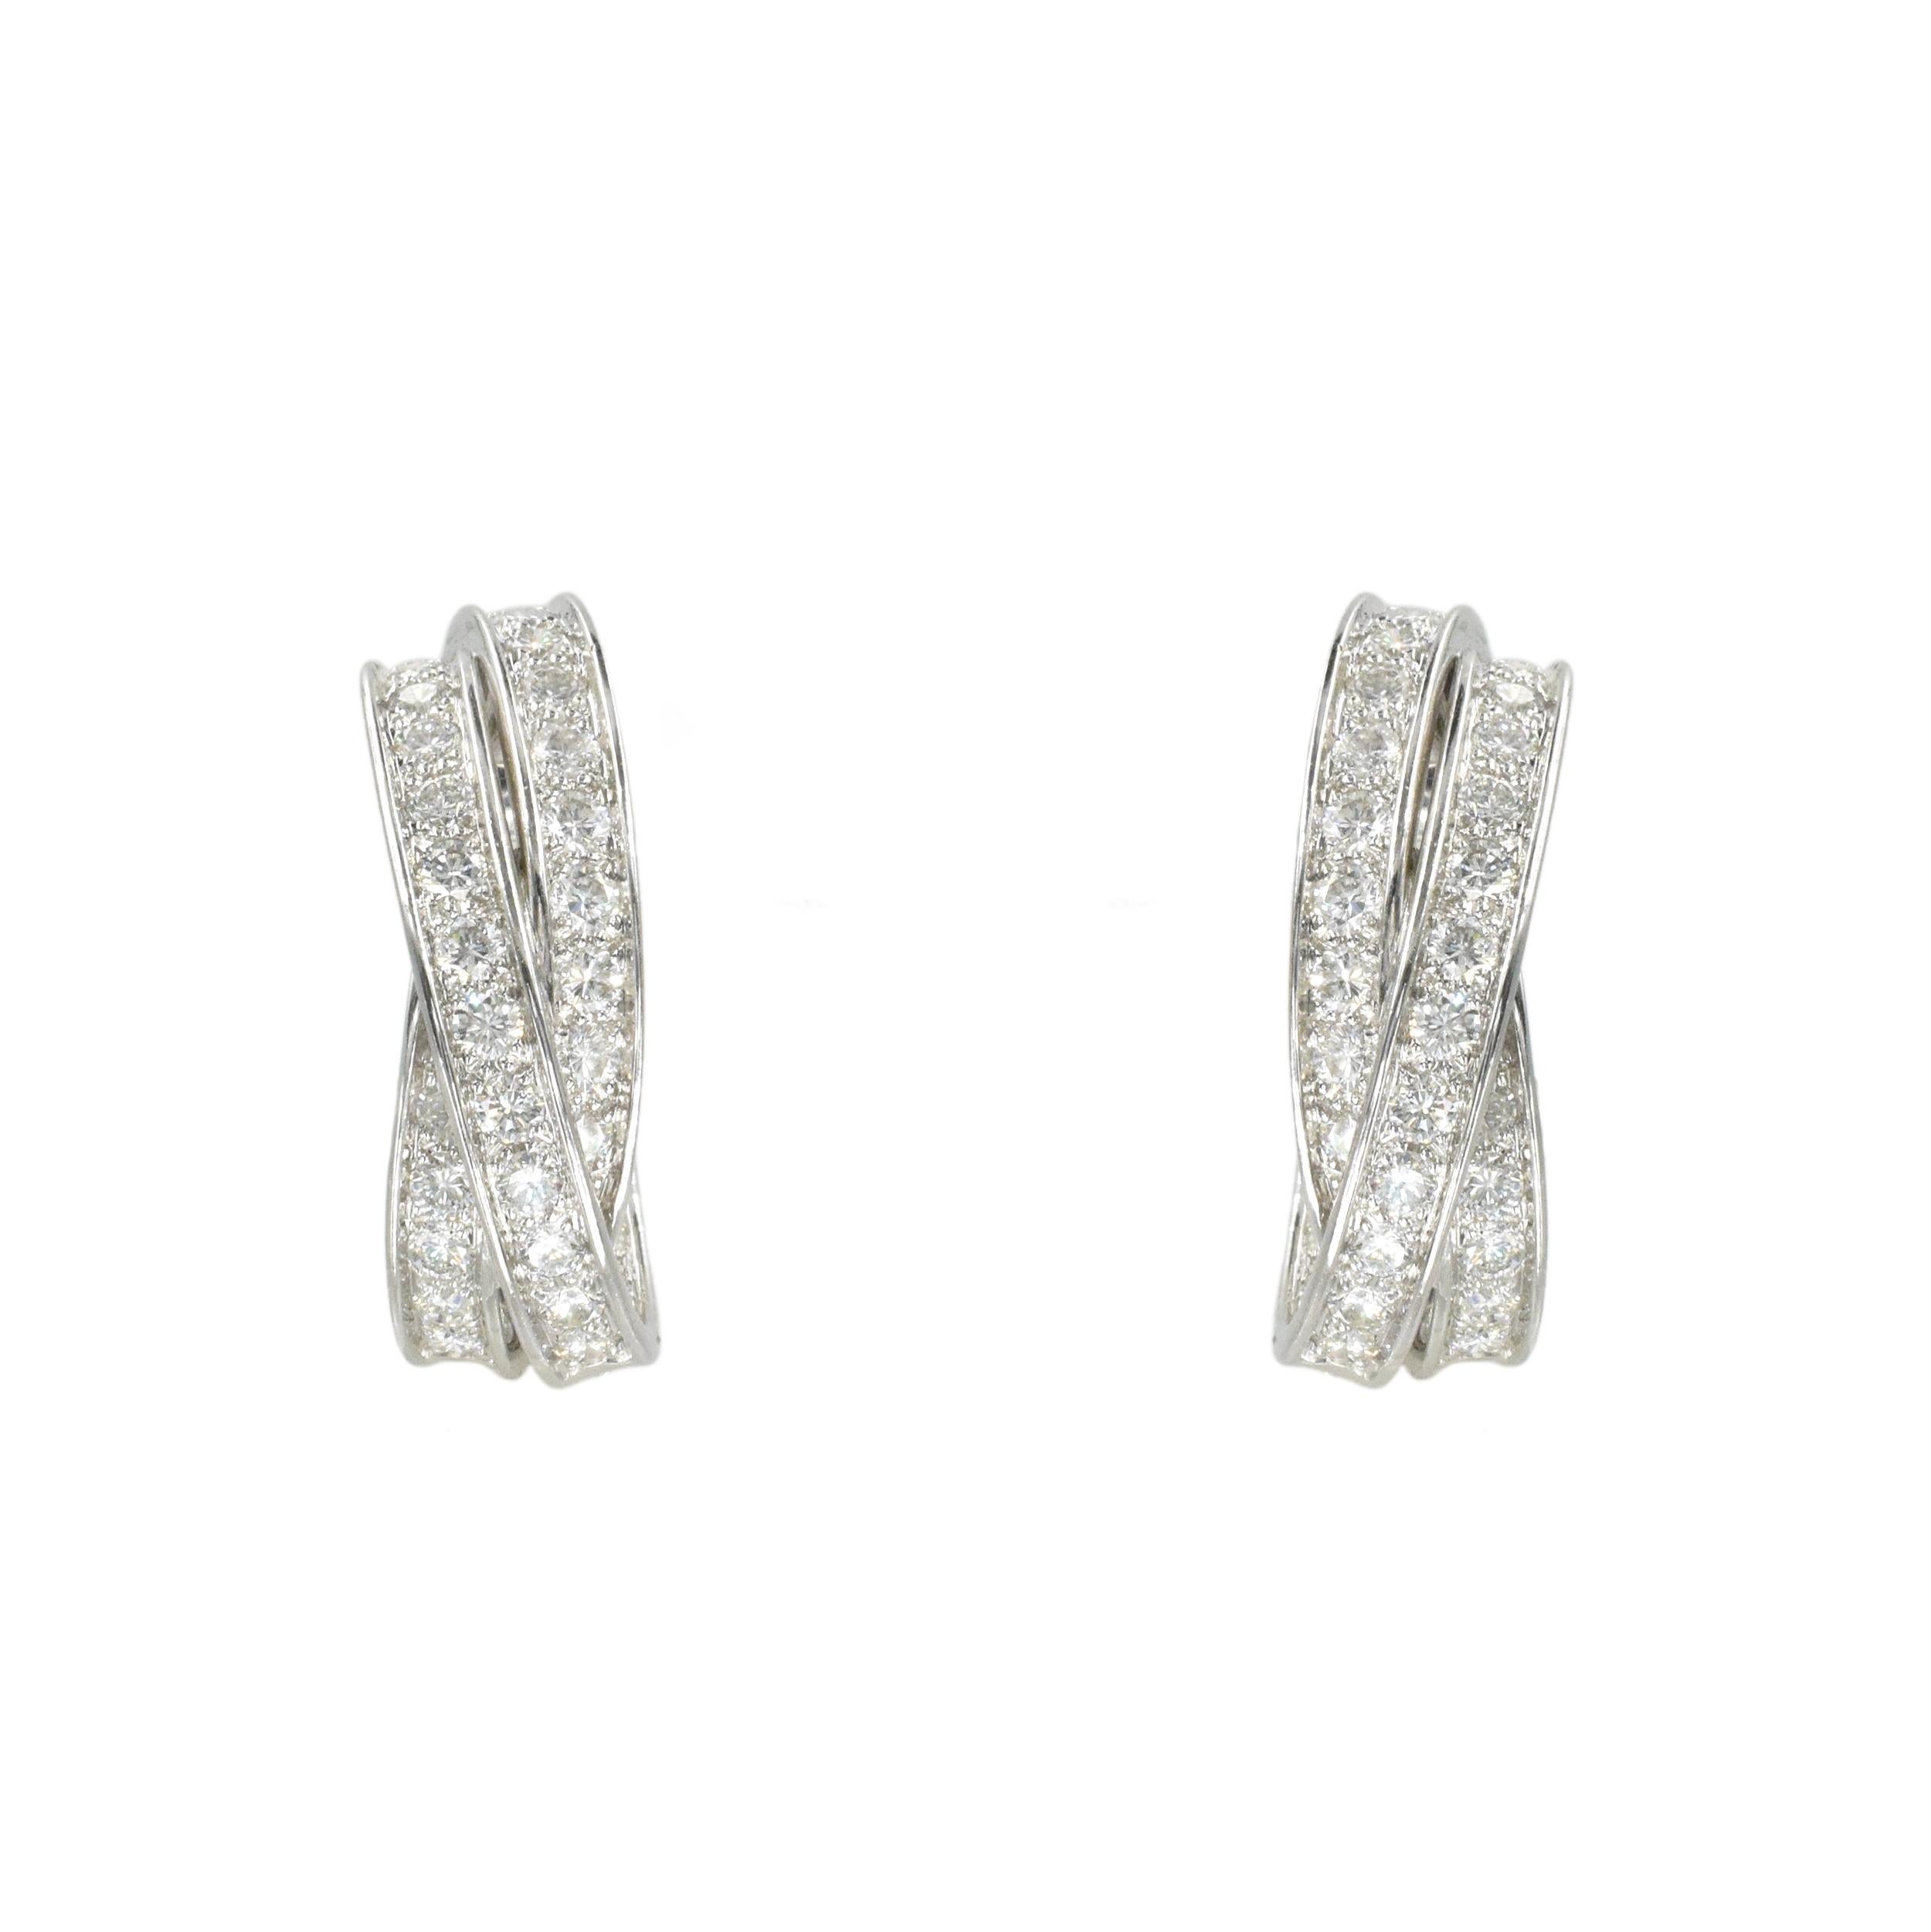 Boucles d'oreilles en or blanc 18k avec diamants Trinity Inside Out de Cartier. Cette paire d'anneaux comporte trois
bandes entrelacées serties de diamants ronds de taille brillant d'un poids total de
environ 5,0 carats Couleur : F/G, Clarté : VS+.